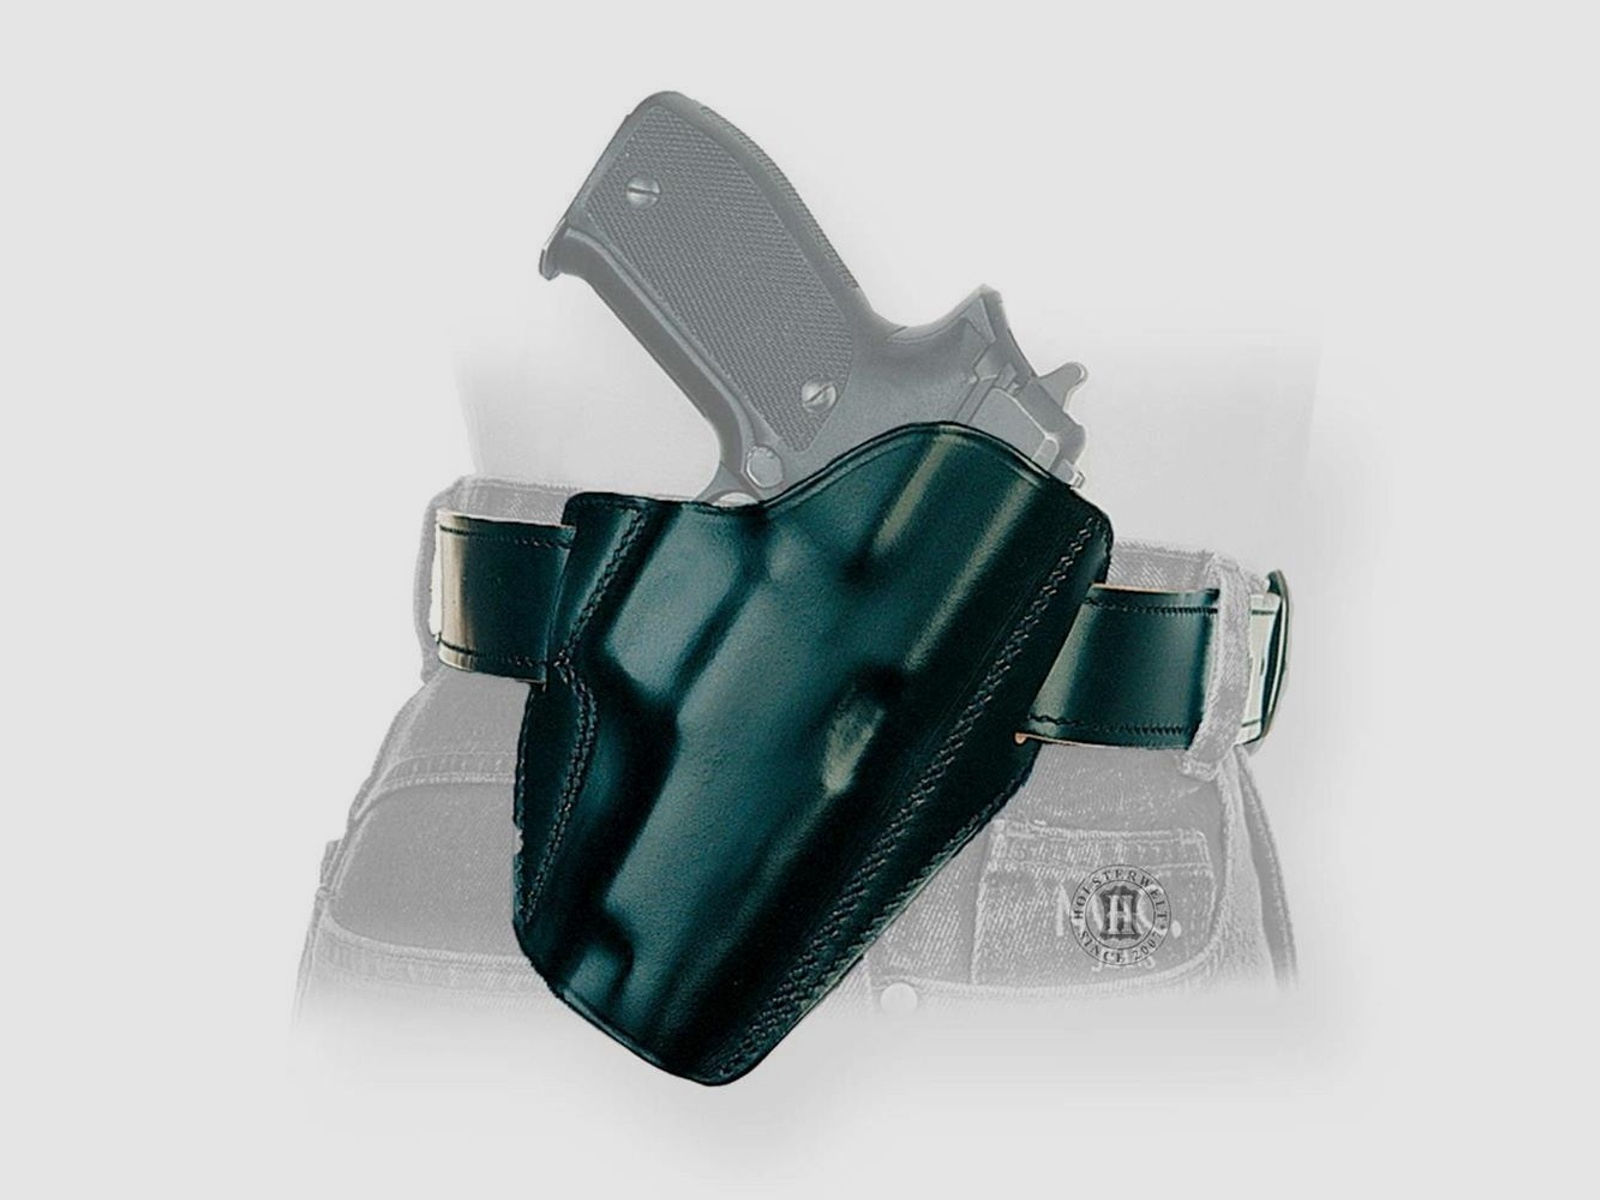 Schnellziehholster LIGHTNING "FBI" Glock 20/21 ,S&W SIGMA C, Zoraki 917-Rechtshänder-Braun